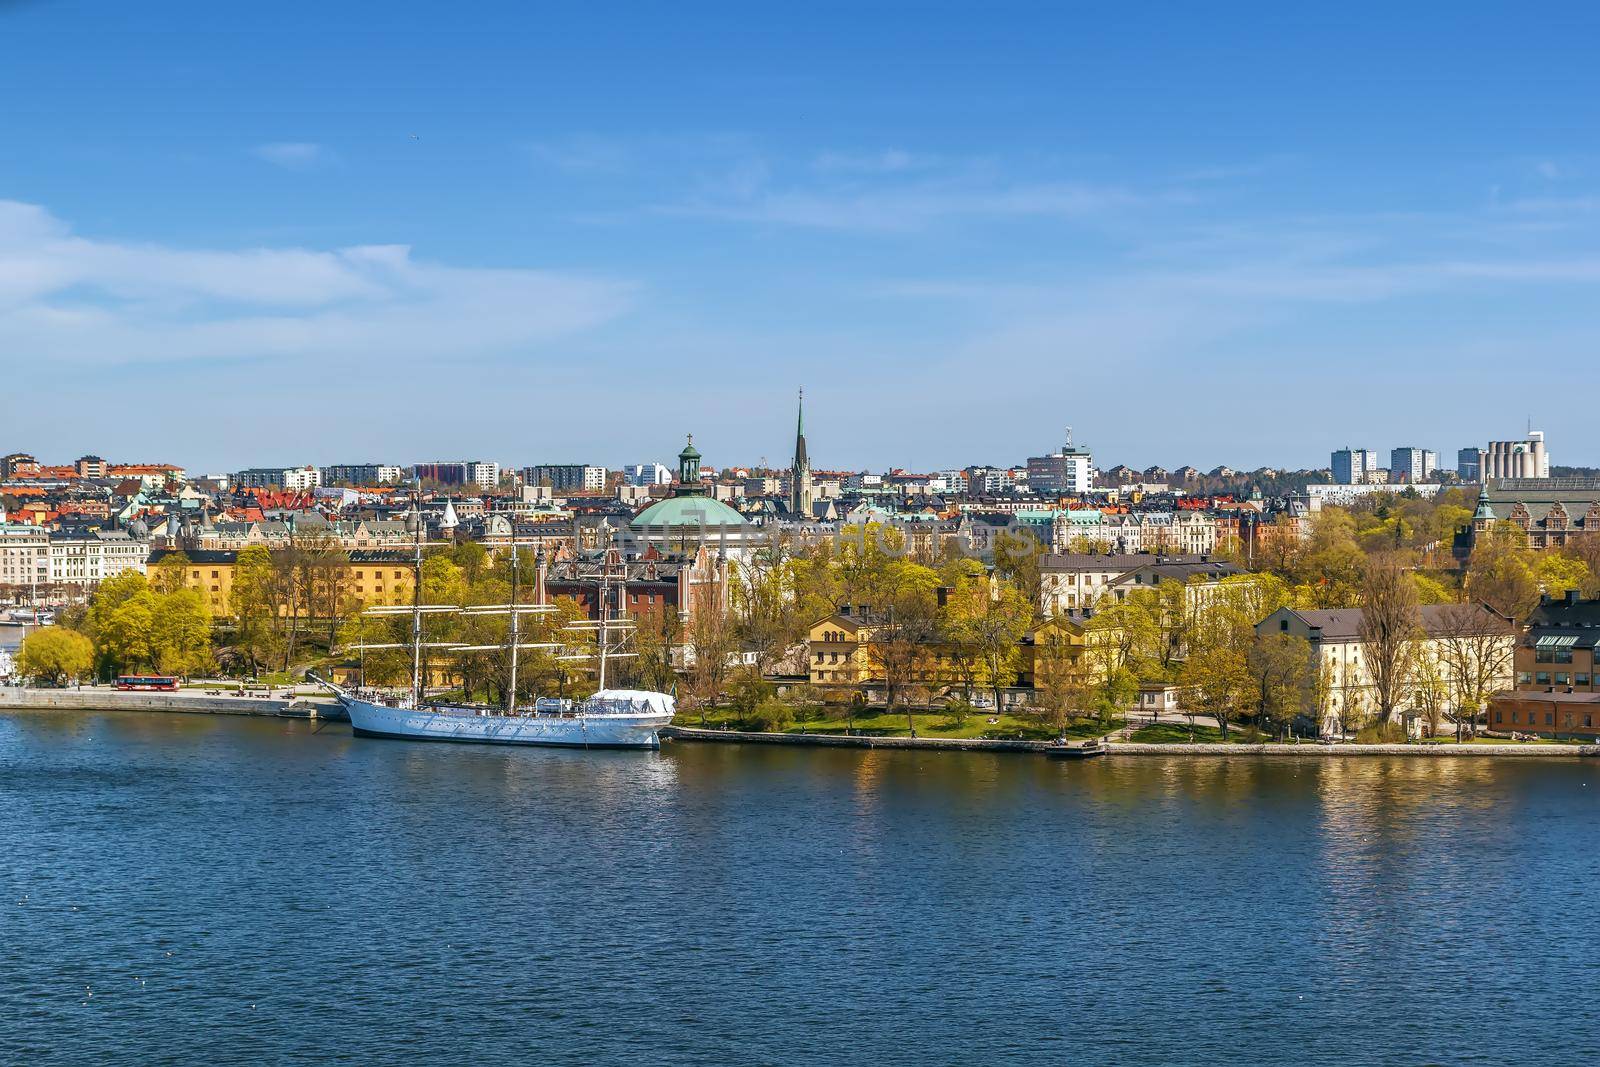 View of Stockholm (Skeppsholmen island) with af Chapman (ship) from Katarina Elevator, Sweden